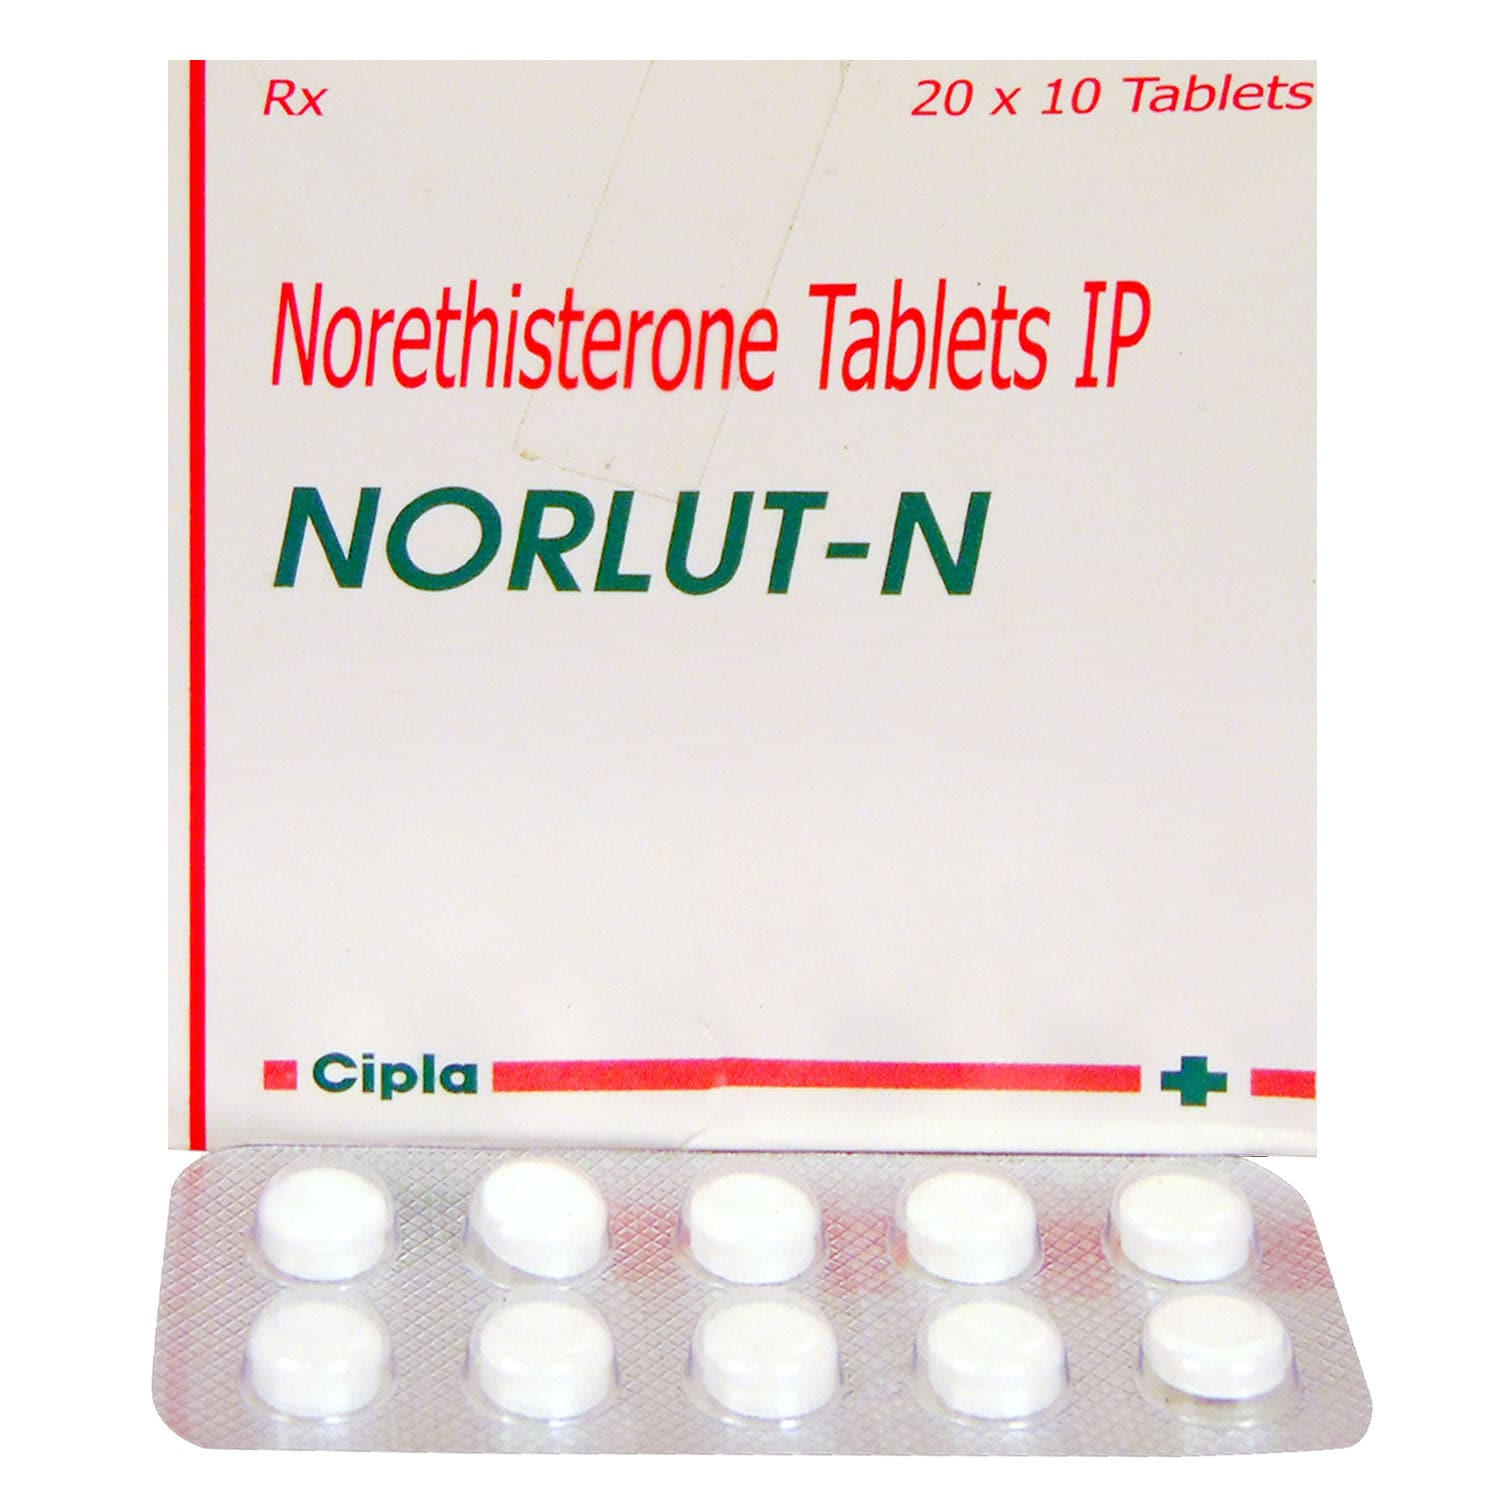 Norlut-N Tablet